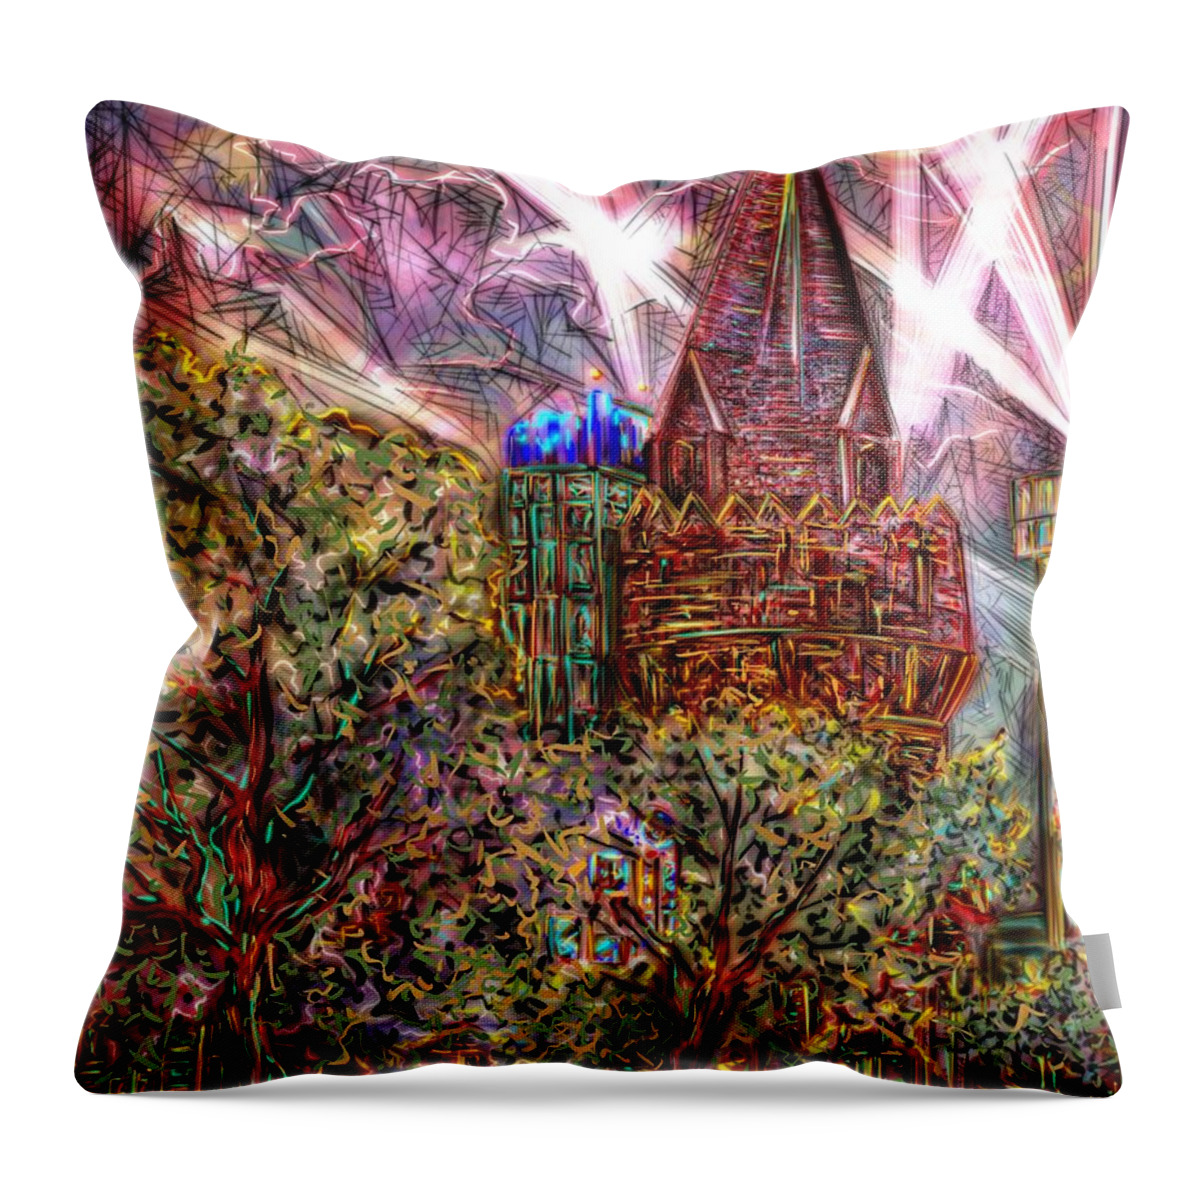 Digital Art Throw Pillow featuring the digital art Light Show by Angela Weddle